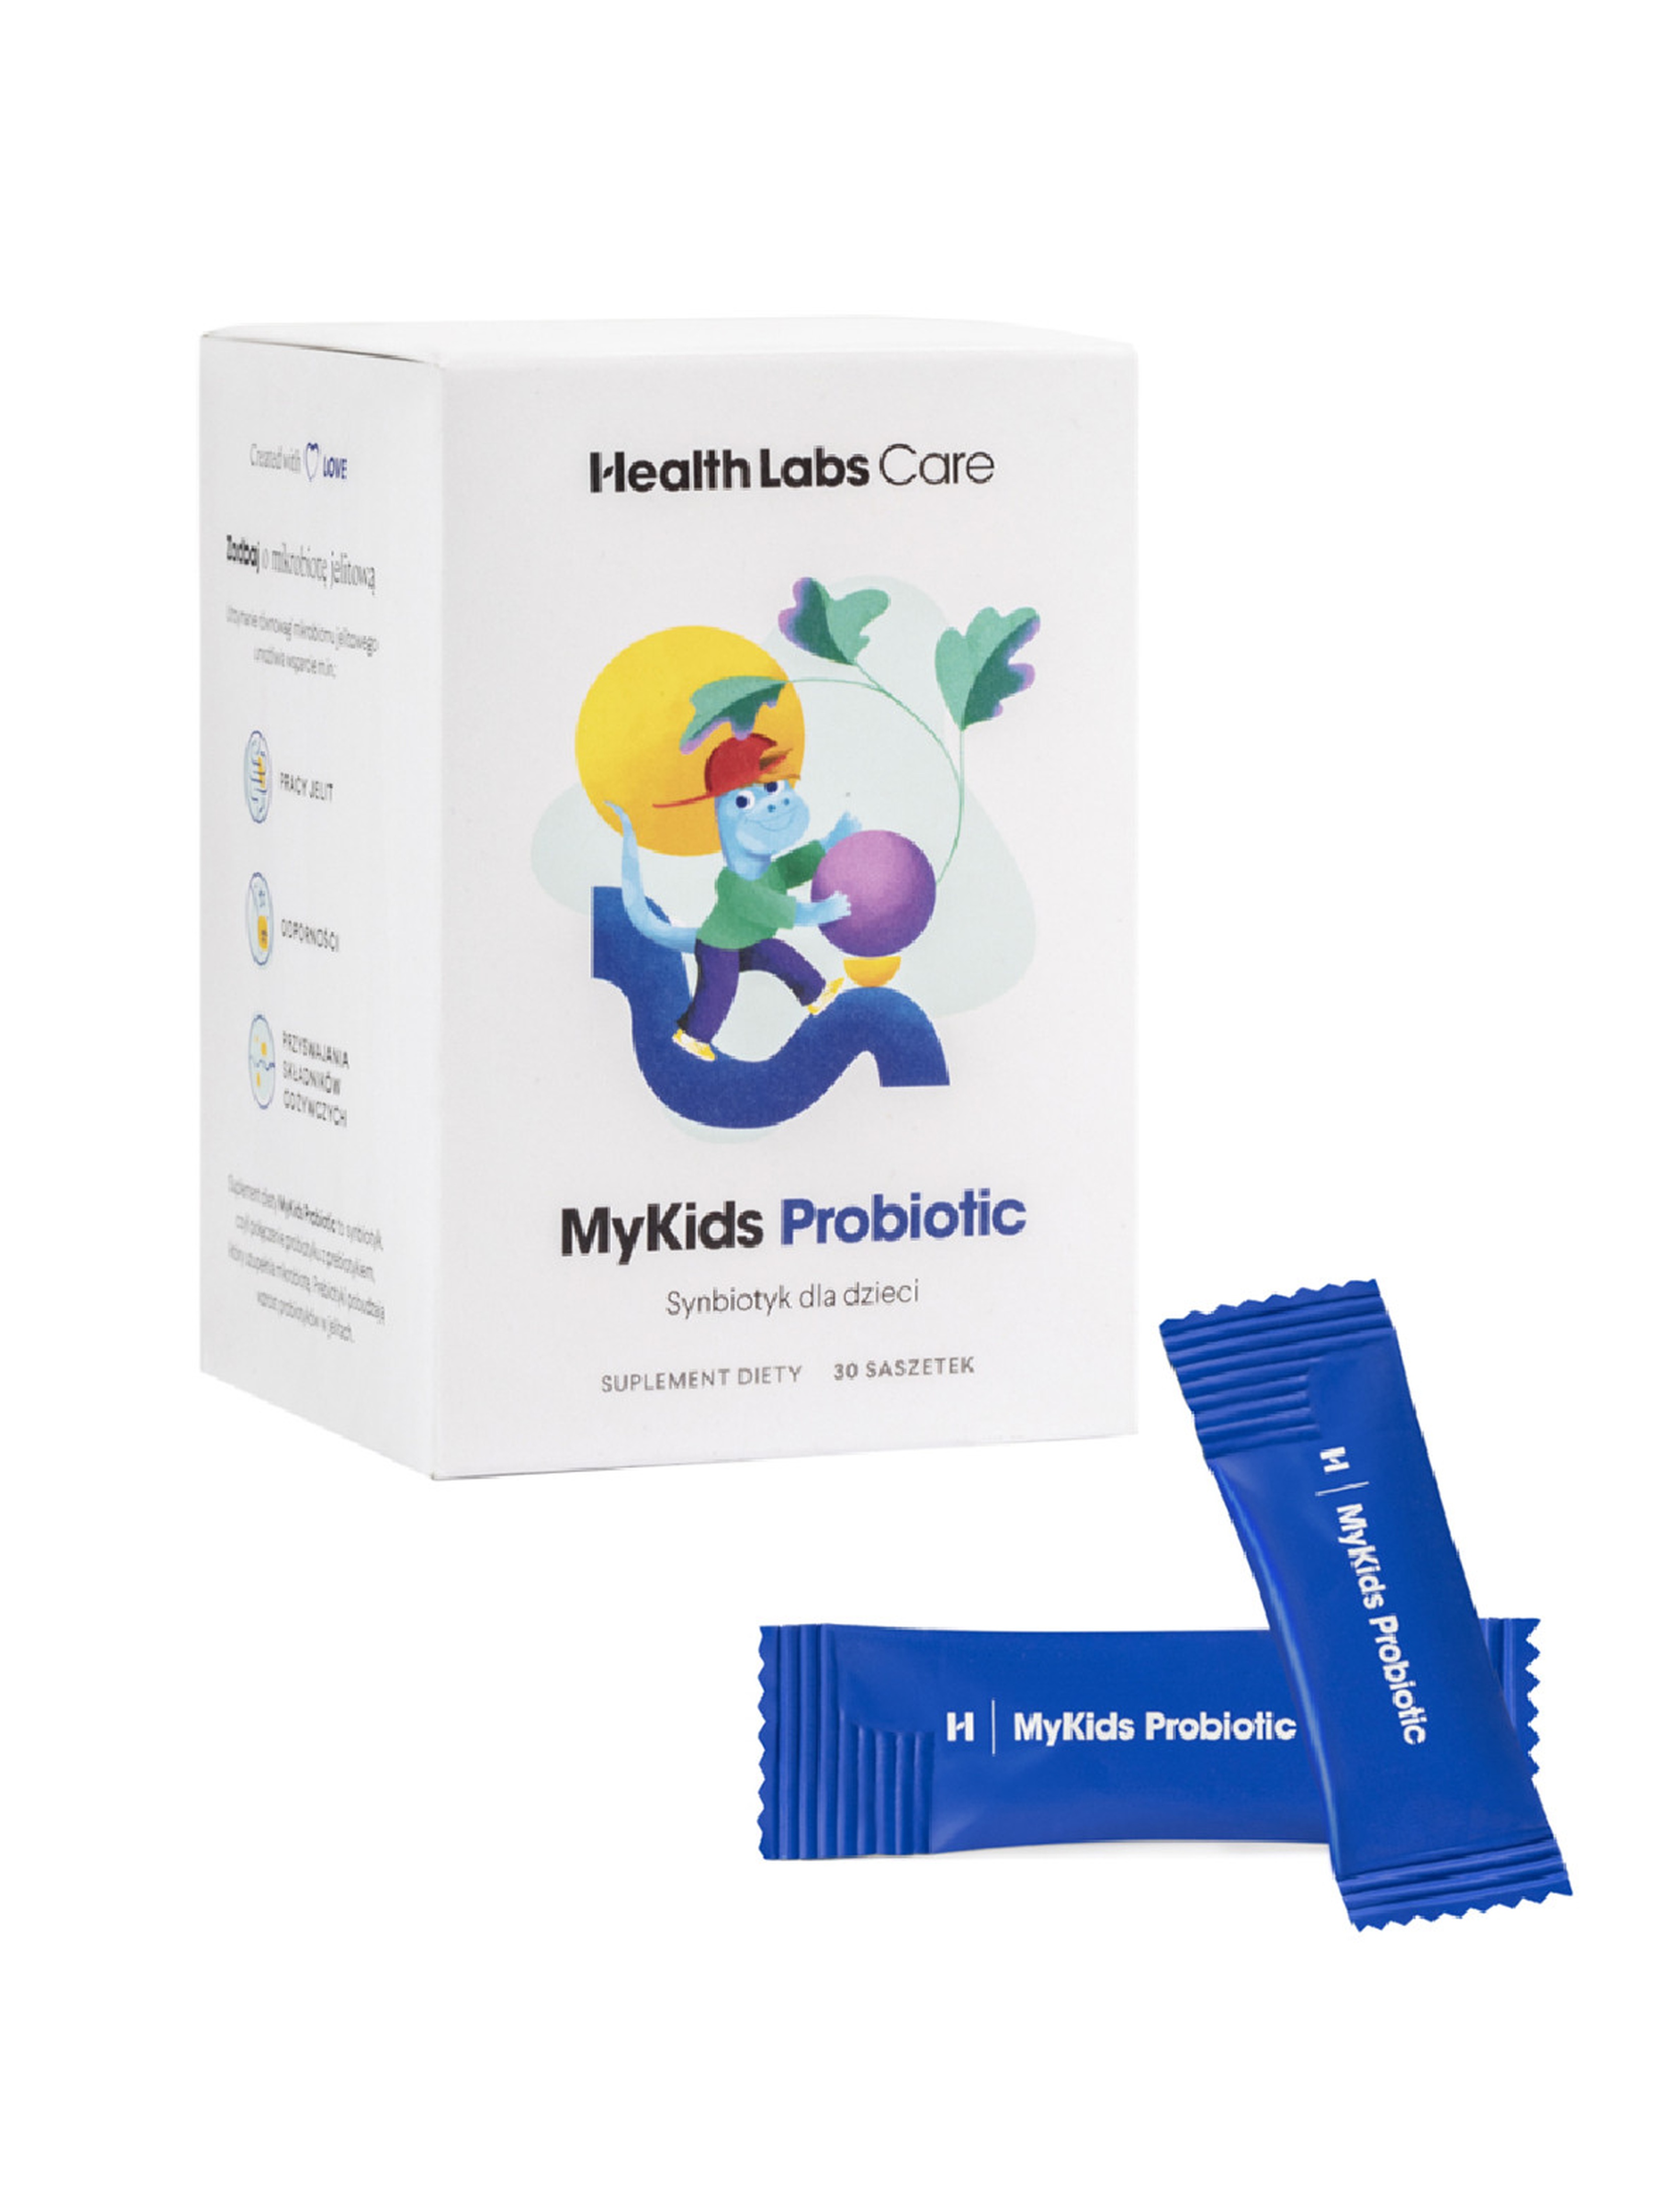 Health Labs Care MyKids Probiotic synbiotyk dla dzieci